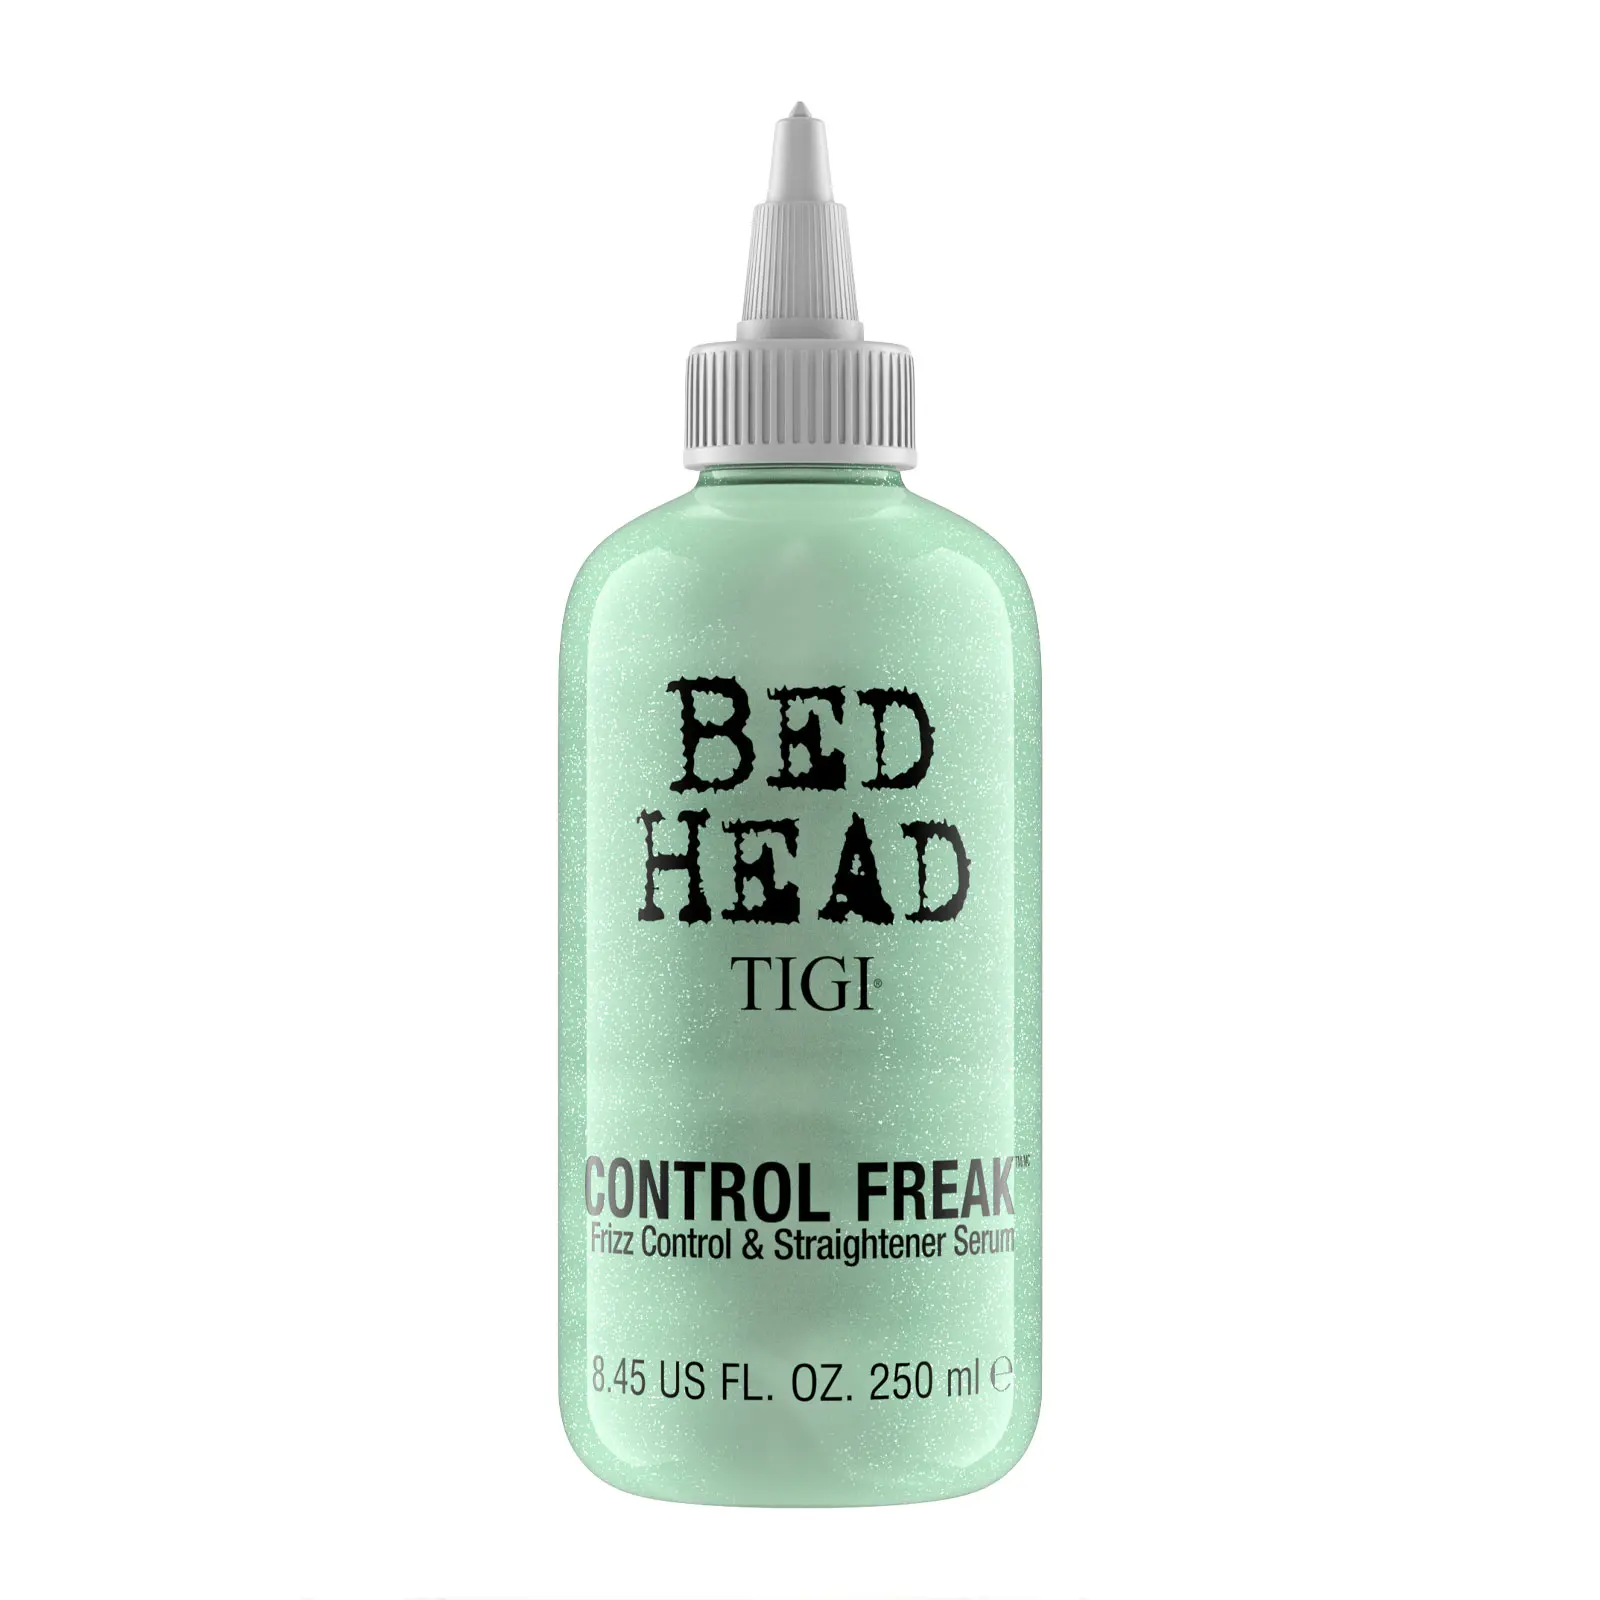 Bed Head by Tigi Control Freak Anti Frizz Serum for Smooth Shiny Hair 250ml